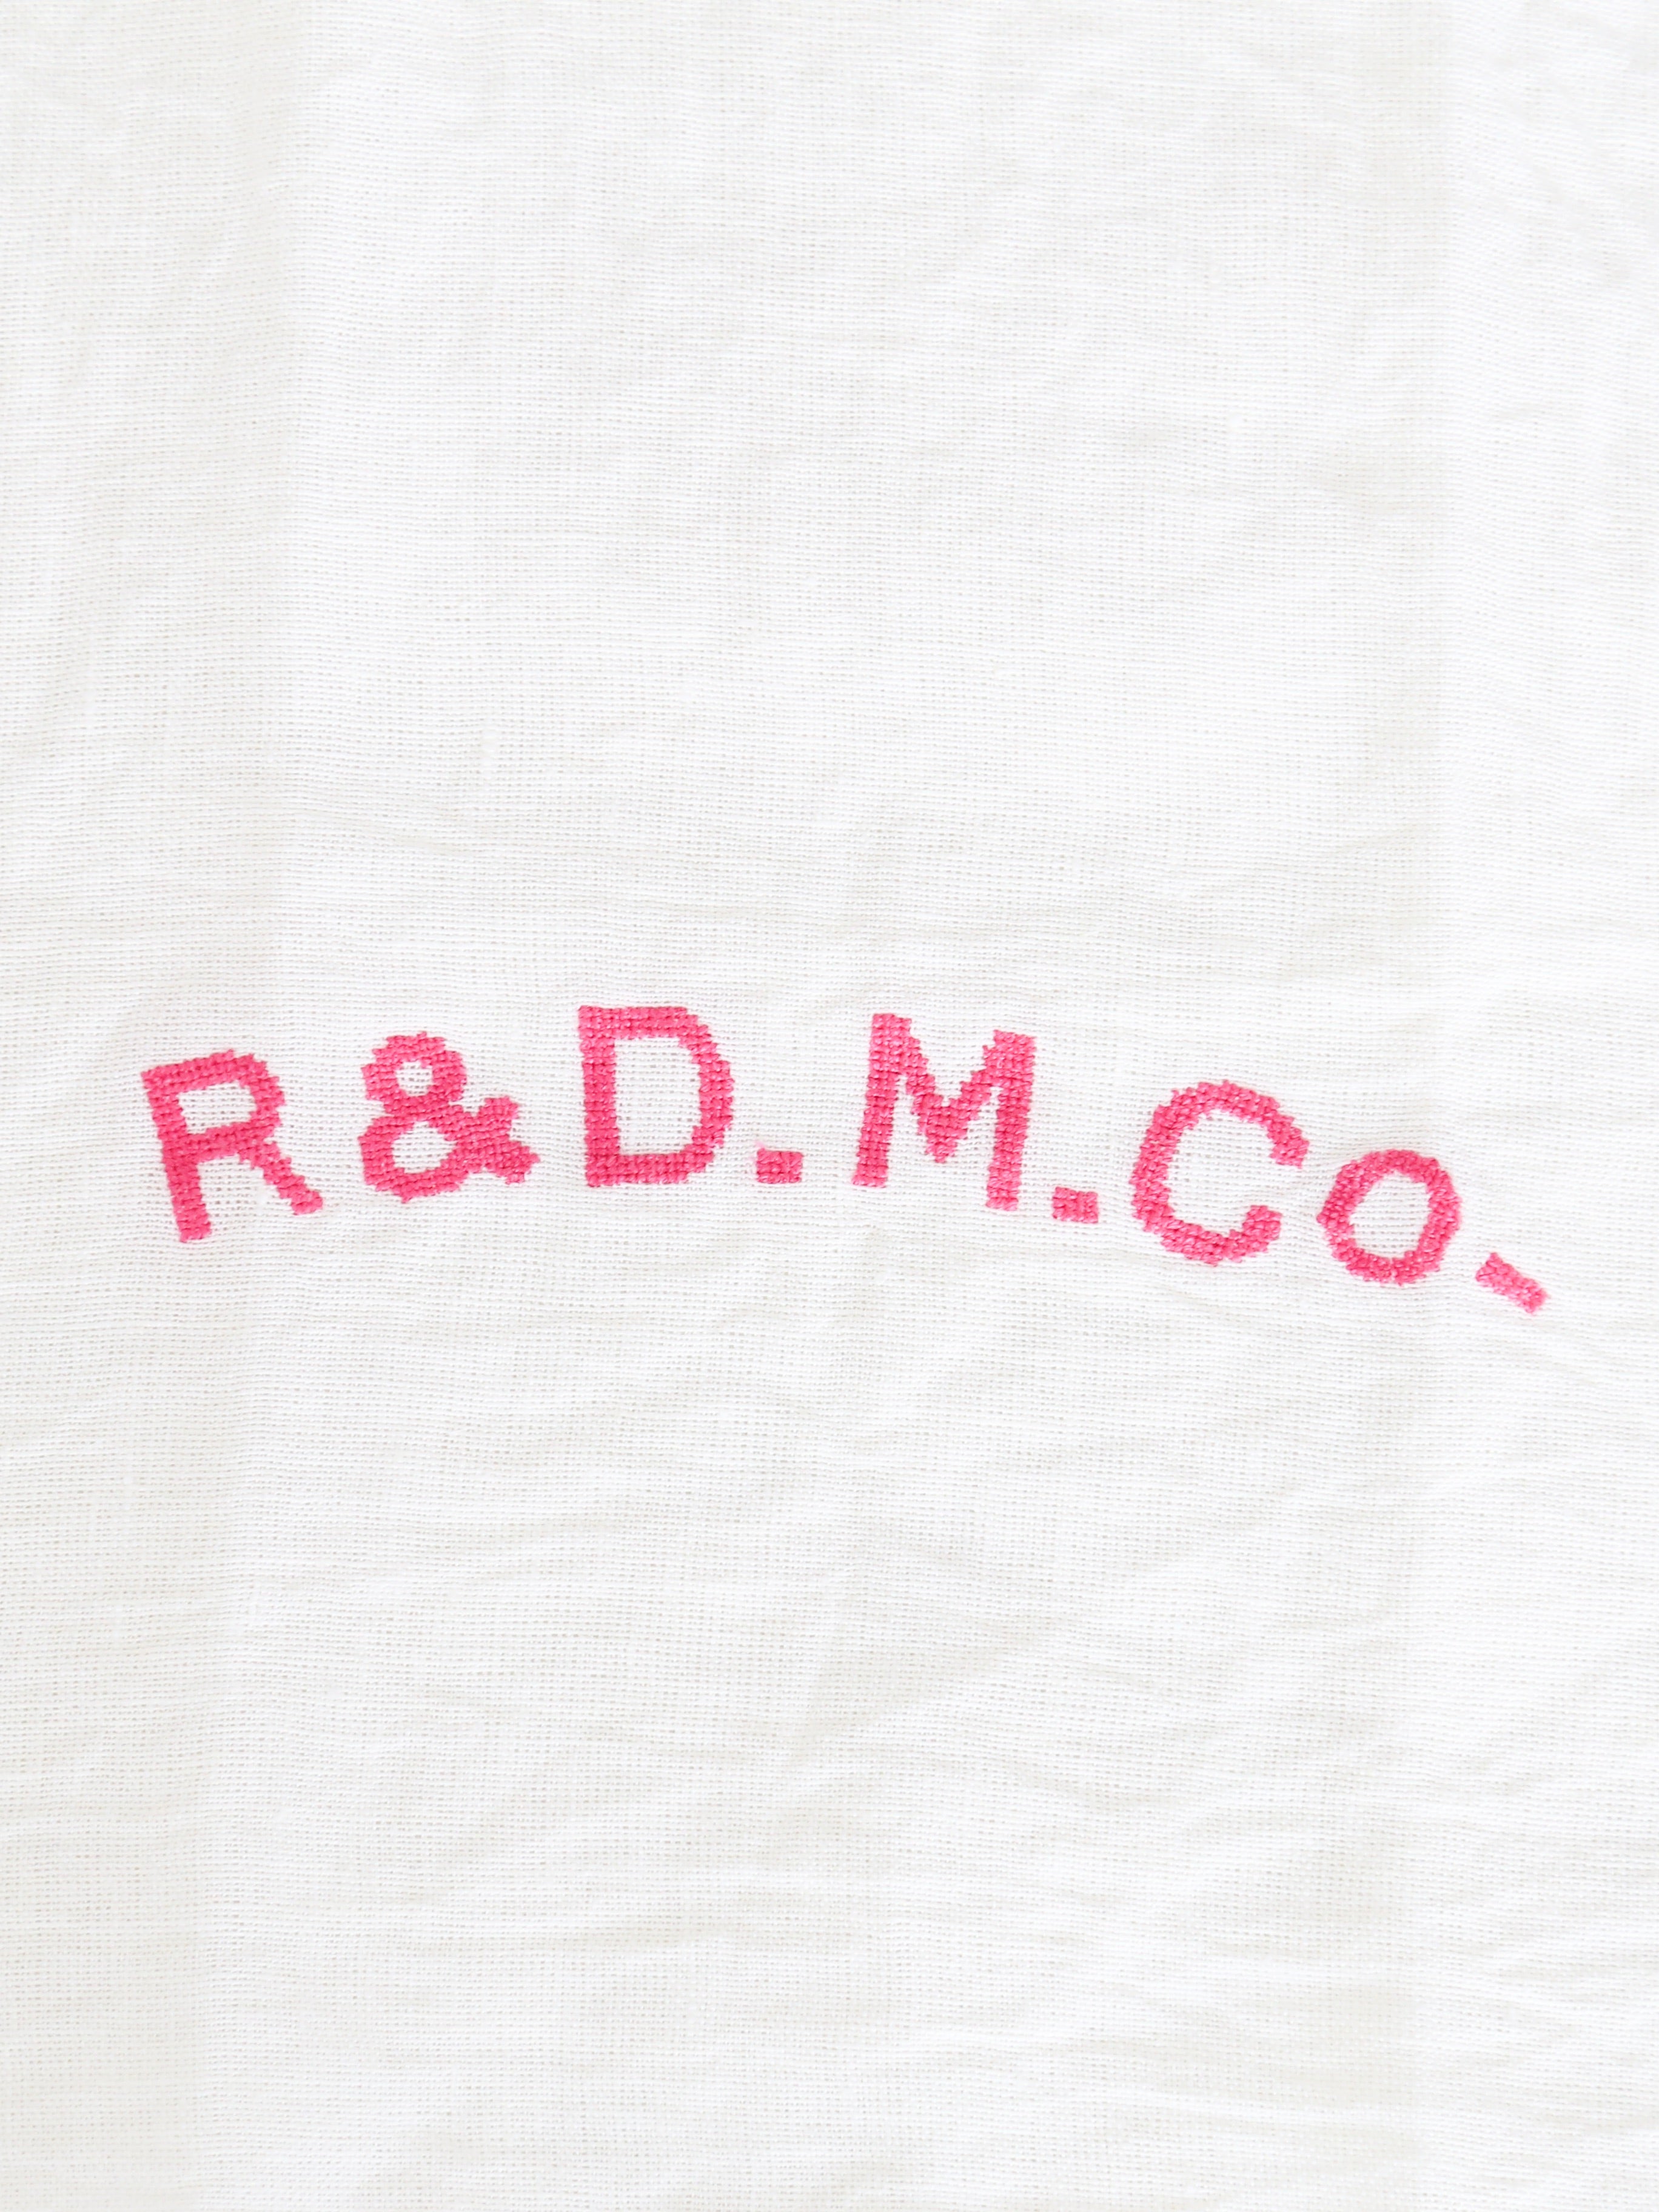 R&D.M.Co- R&D.M.Co-エンブロイダリートートバッグ [6558]